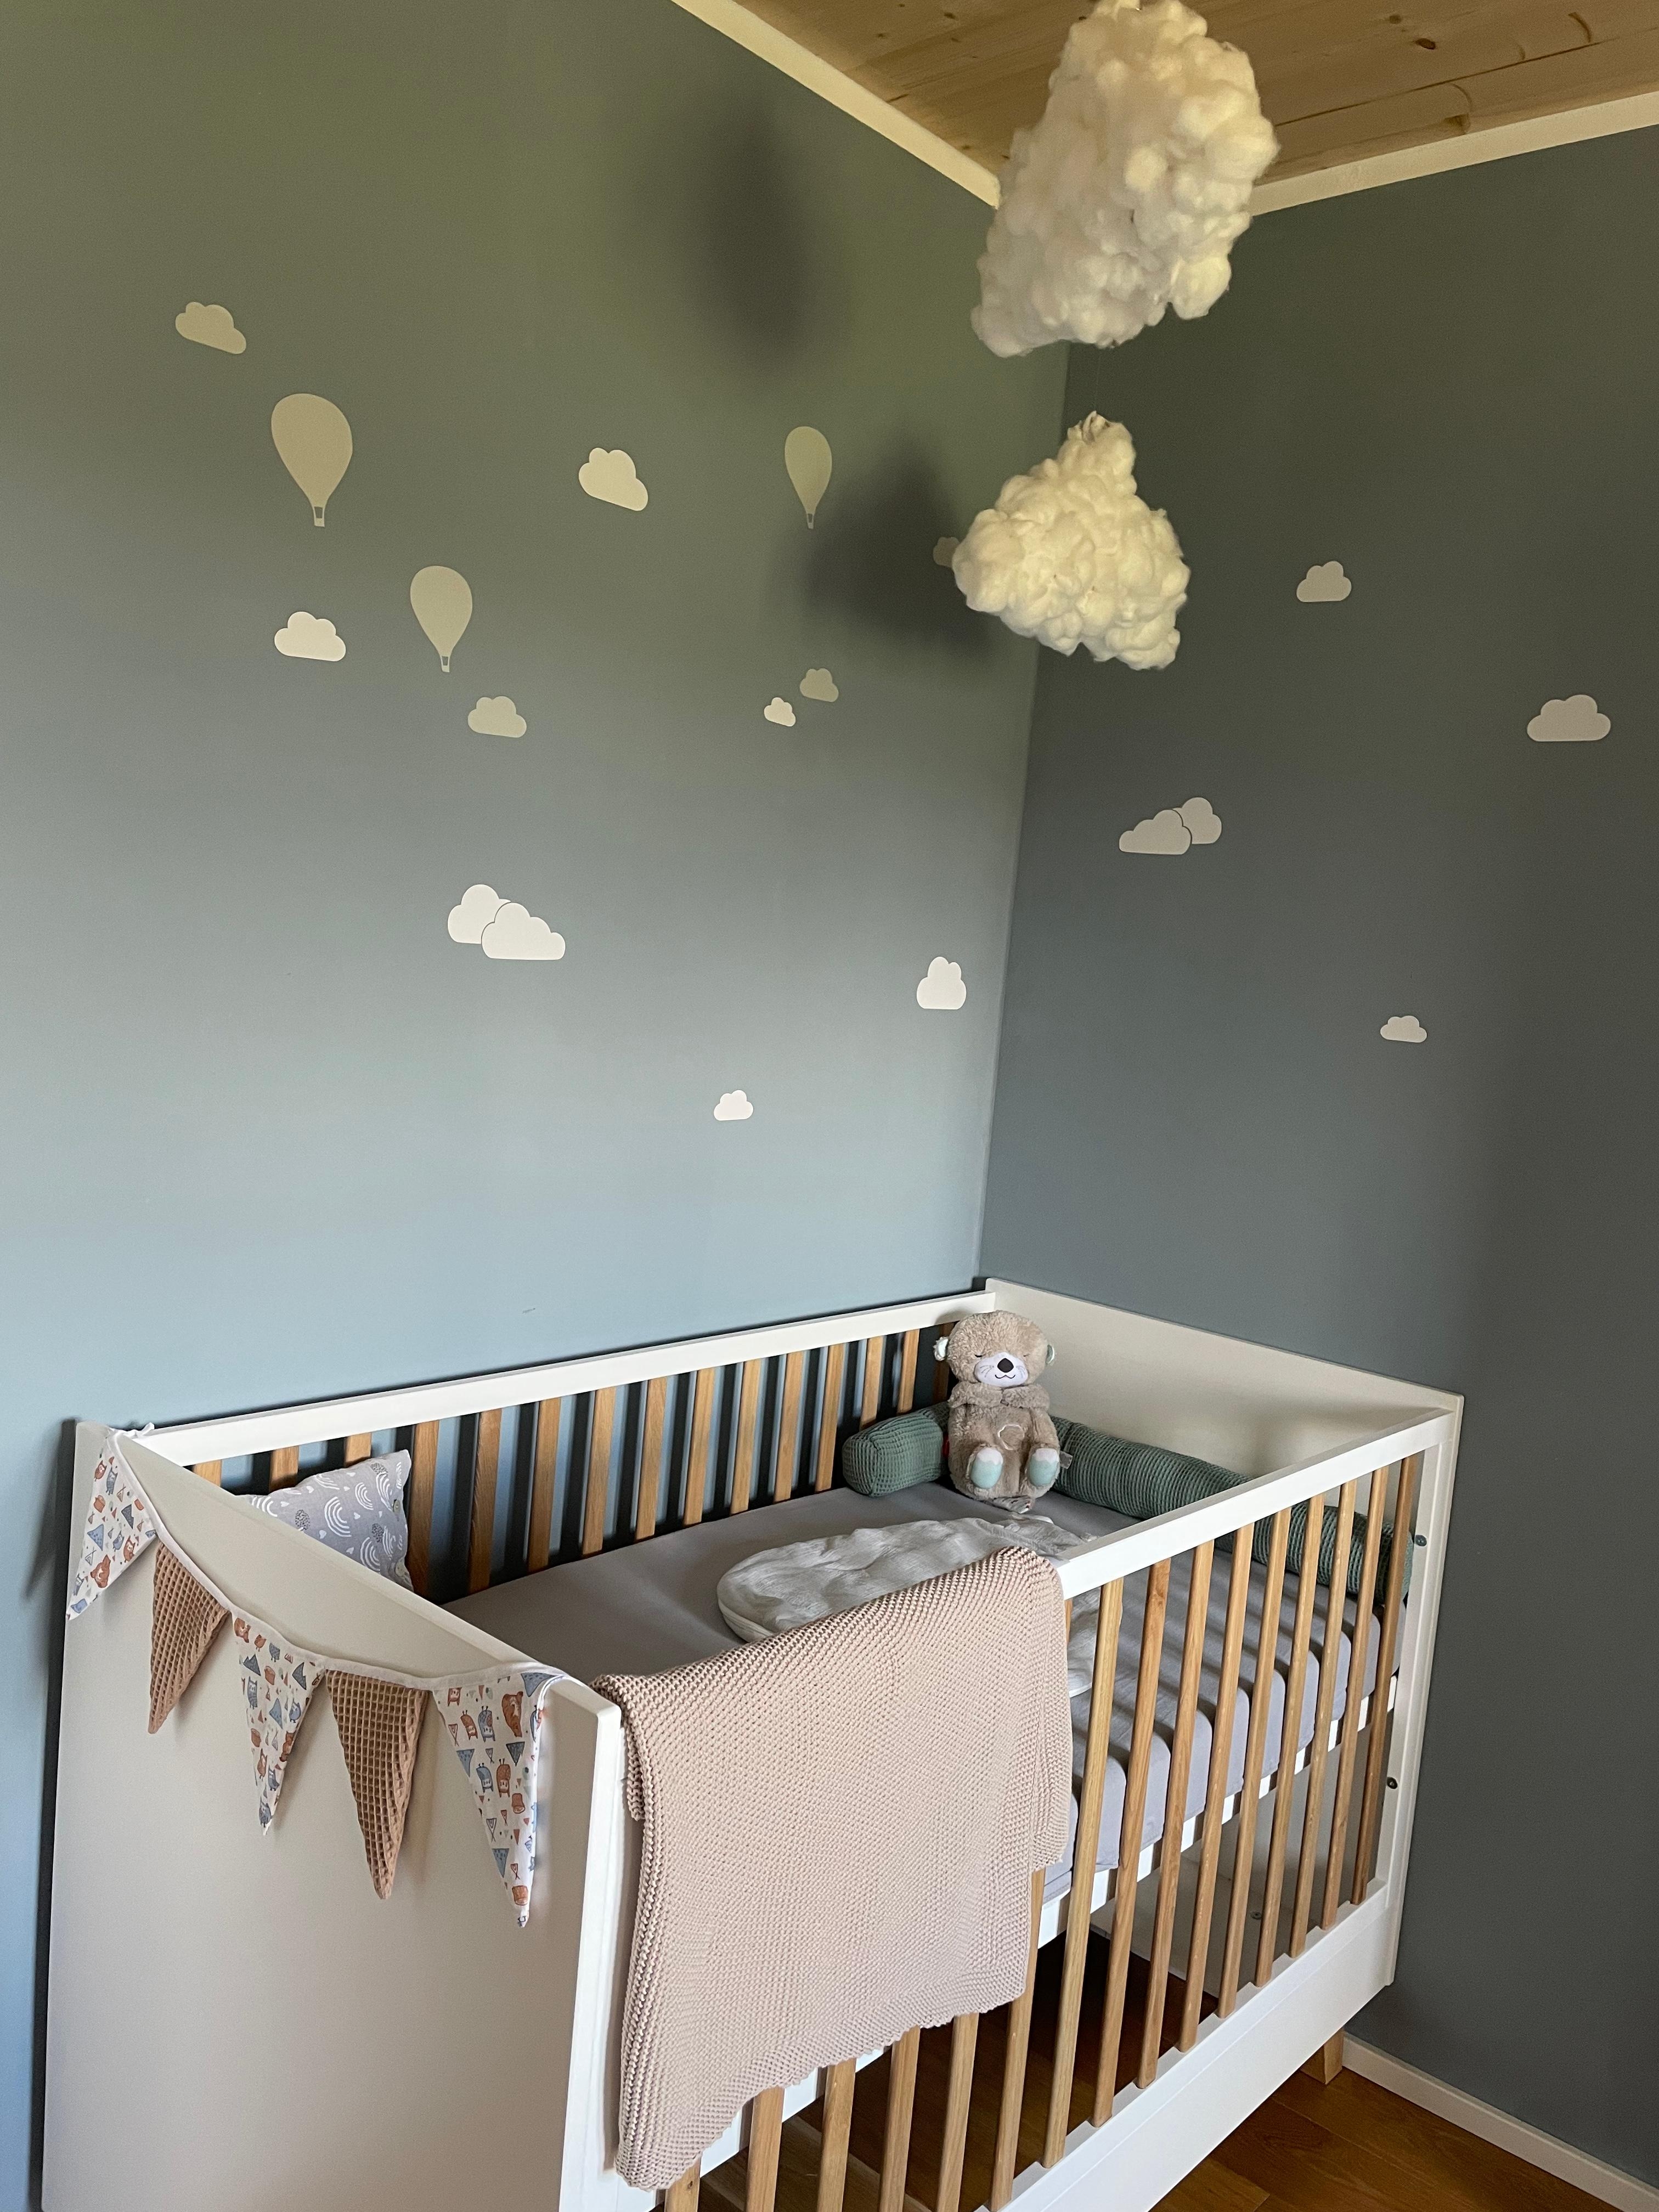 Inspo für‘s Babyzimmer 🤍😊#nordischblau #cloudstyle #minimalism